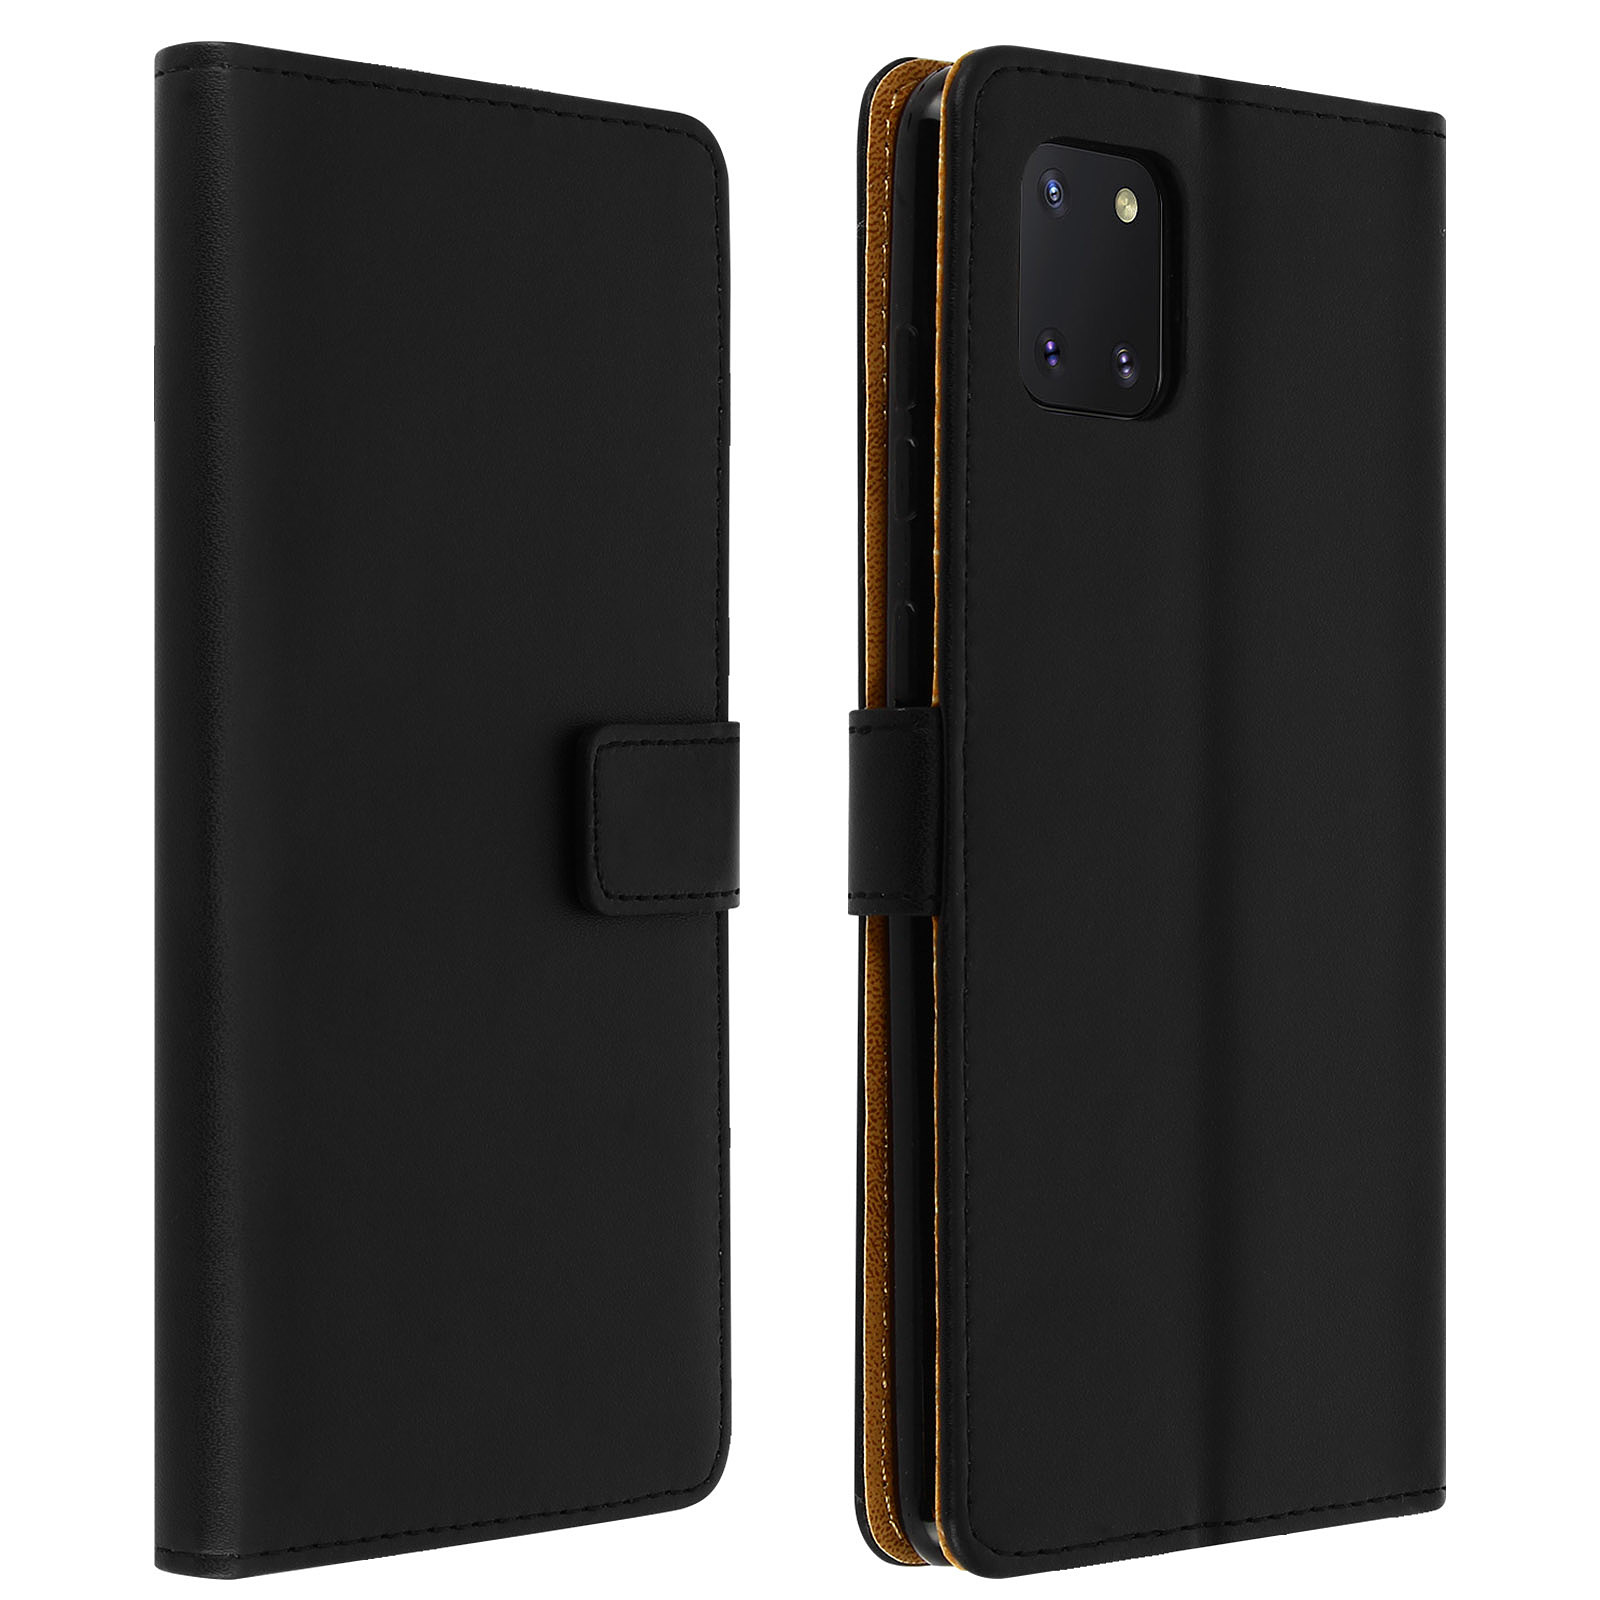 Avizar Etui pour Galaxy Note 10 Lite Cuir Veritable Porte cartes Fonction Support Noir - Coque telephone Avizar